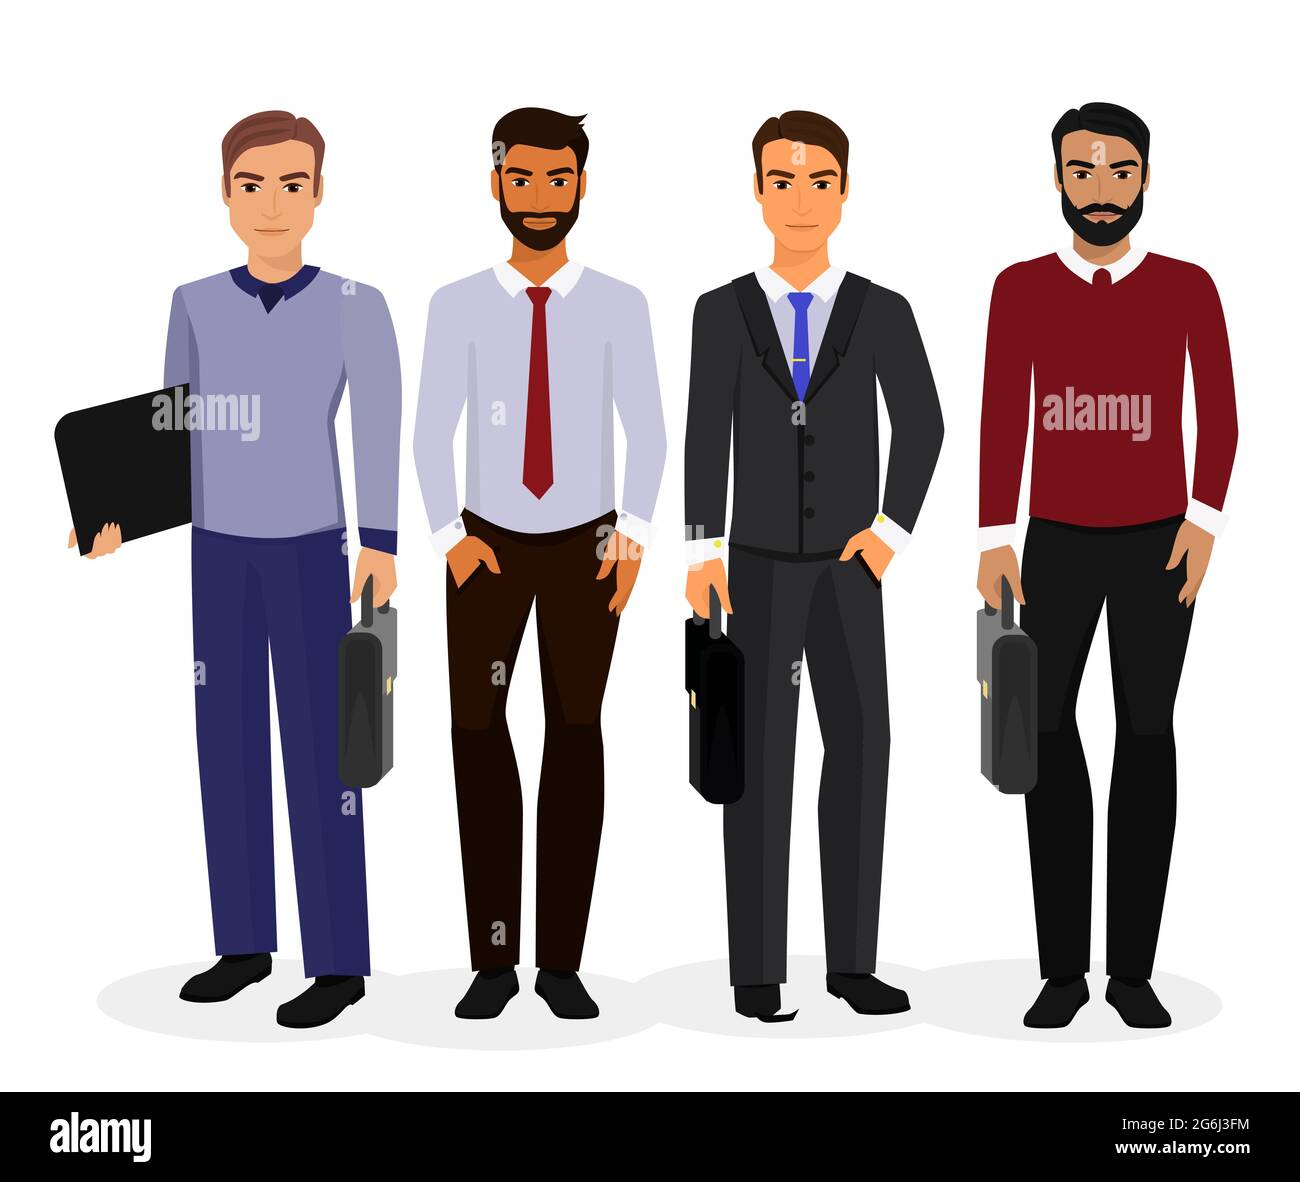 Ilustración vectorial del juego de creación de personajes de dibujos  animados de hombres de negocios. Joven hombre de negocios hermoso sonriente  en estilo de oficina ropa de diferentes colores de piel Imagen